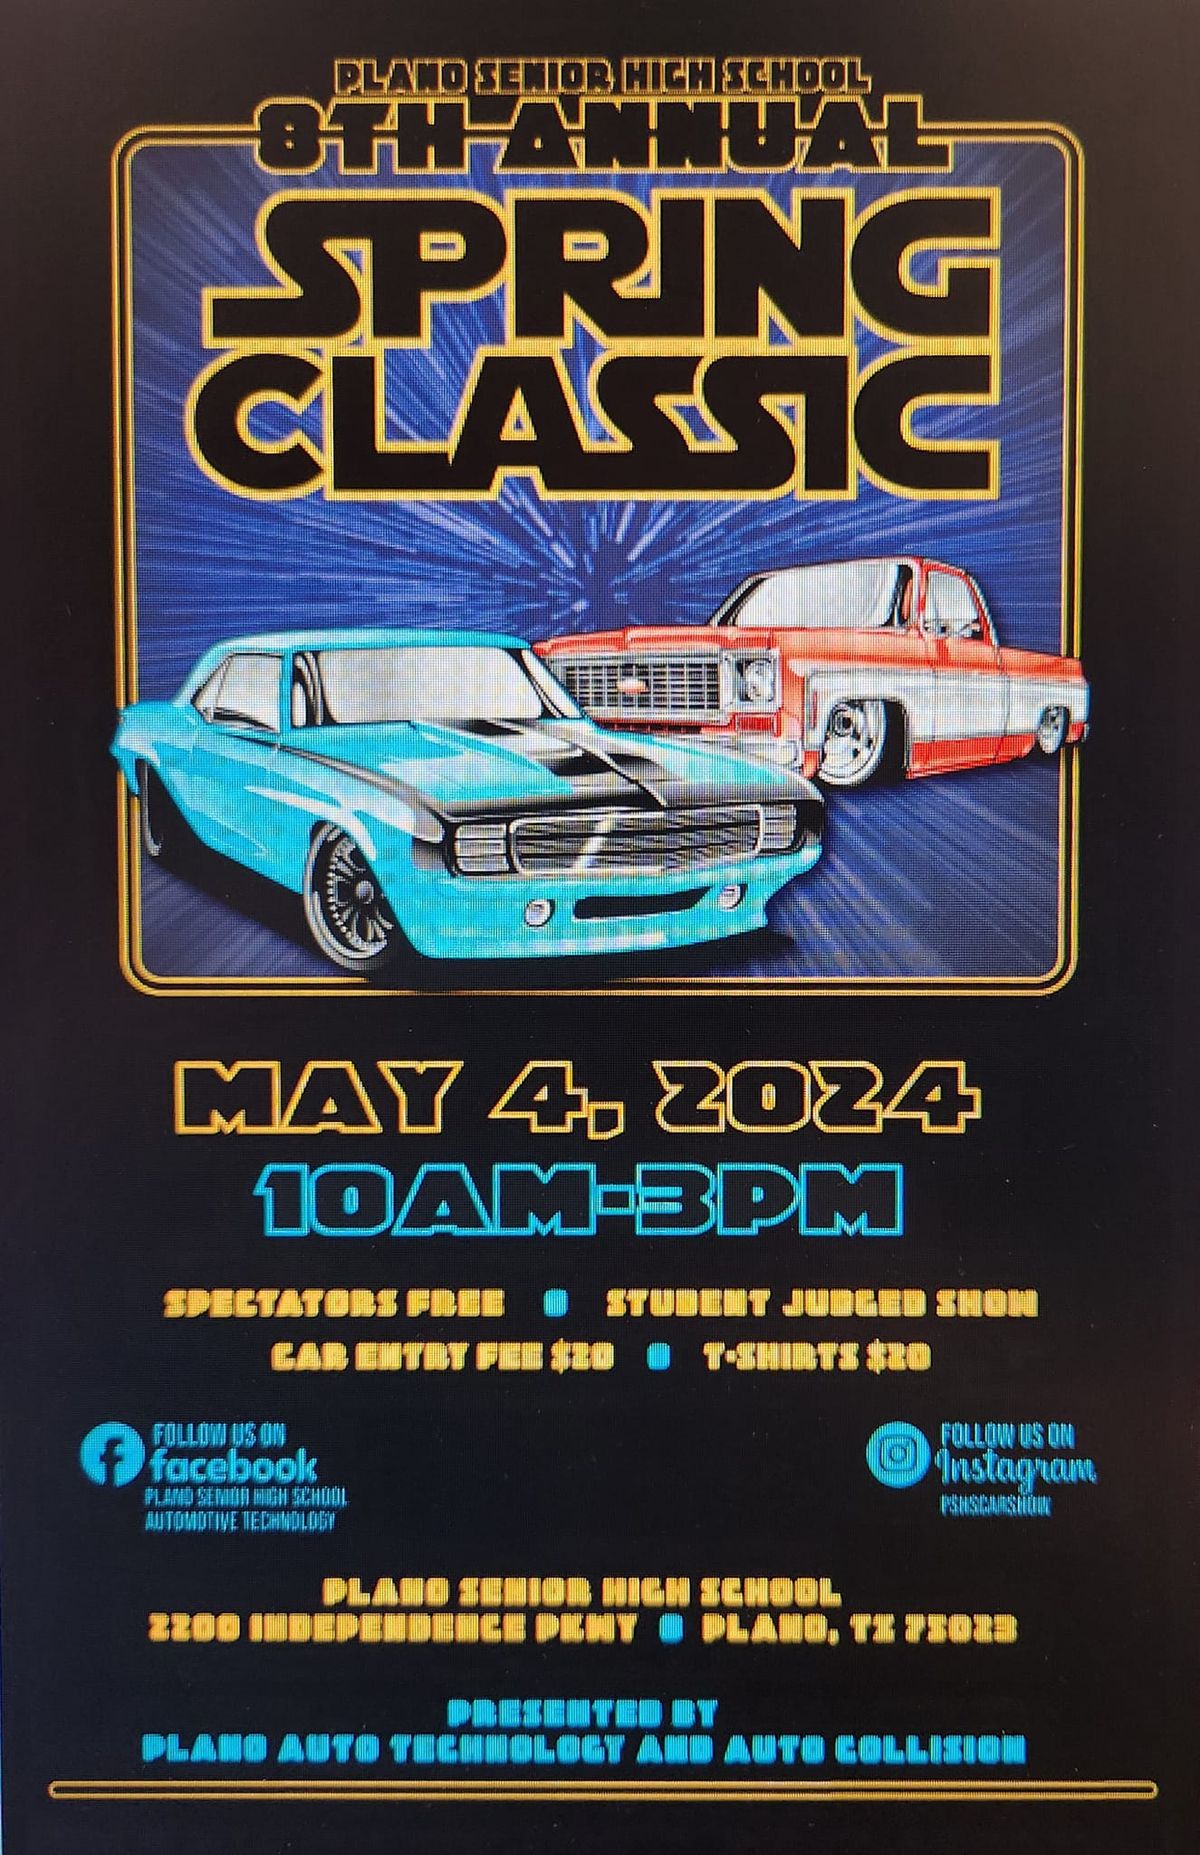 8th Annual Spring Classic Car Show